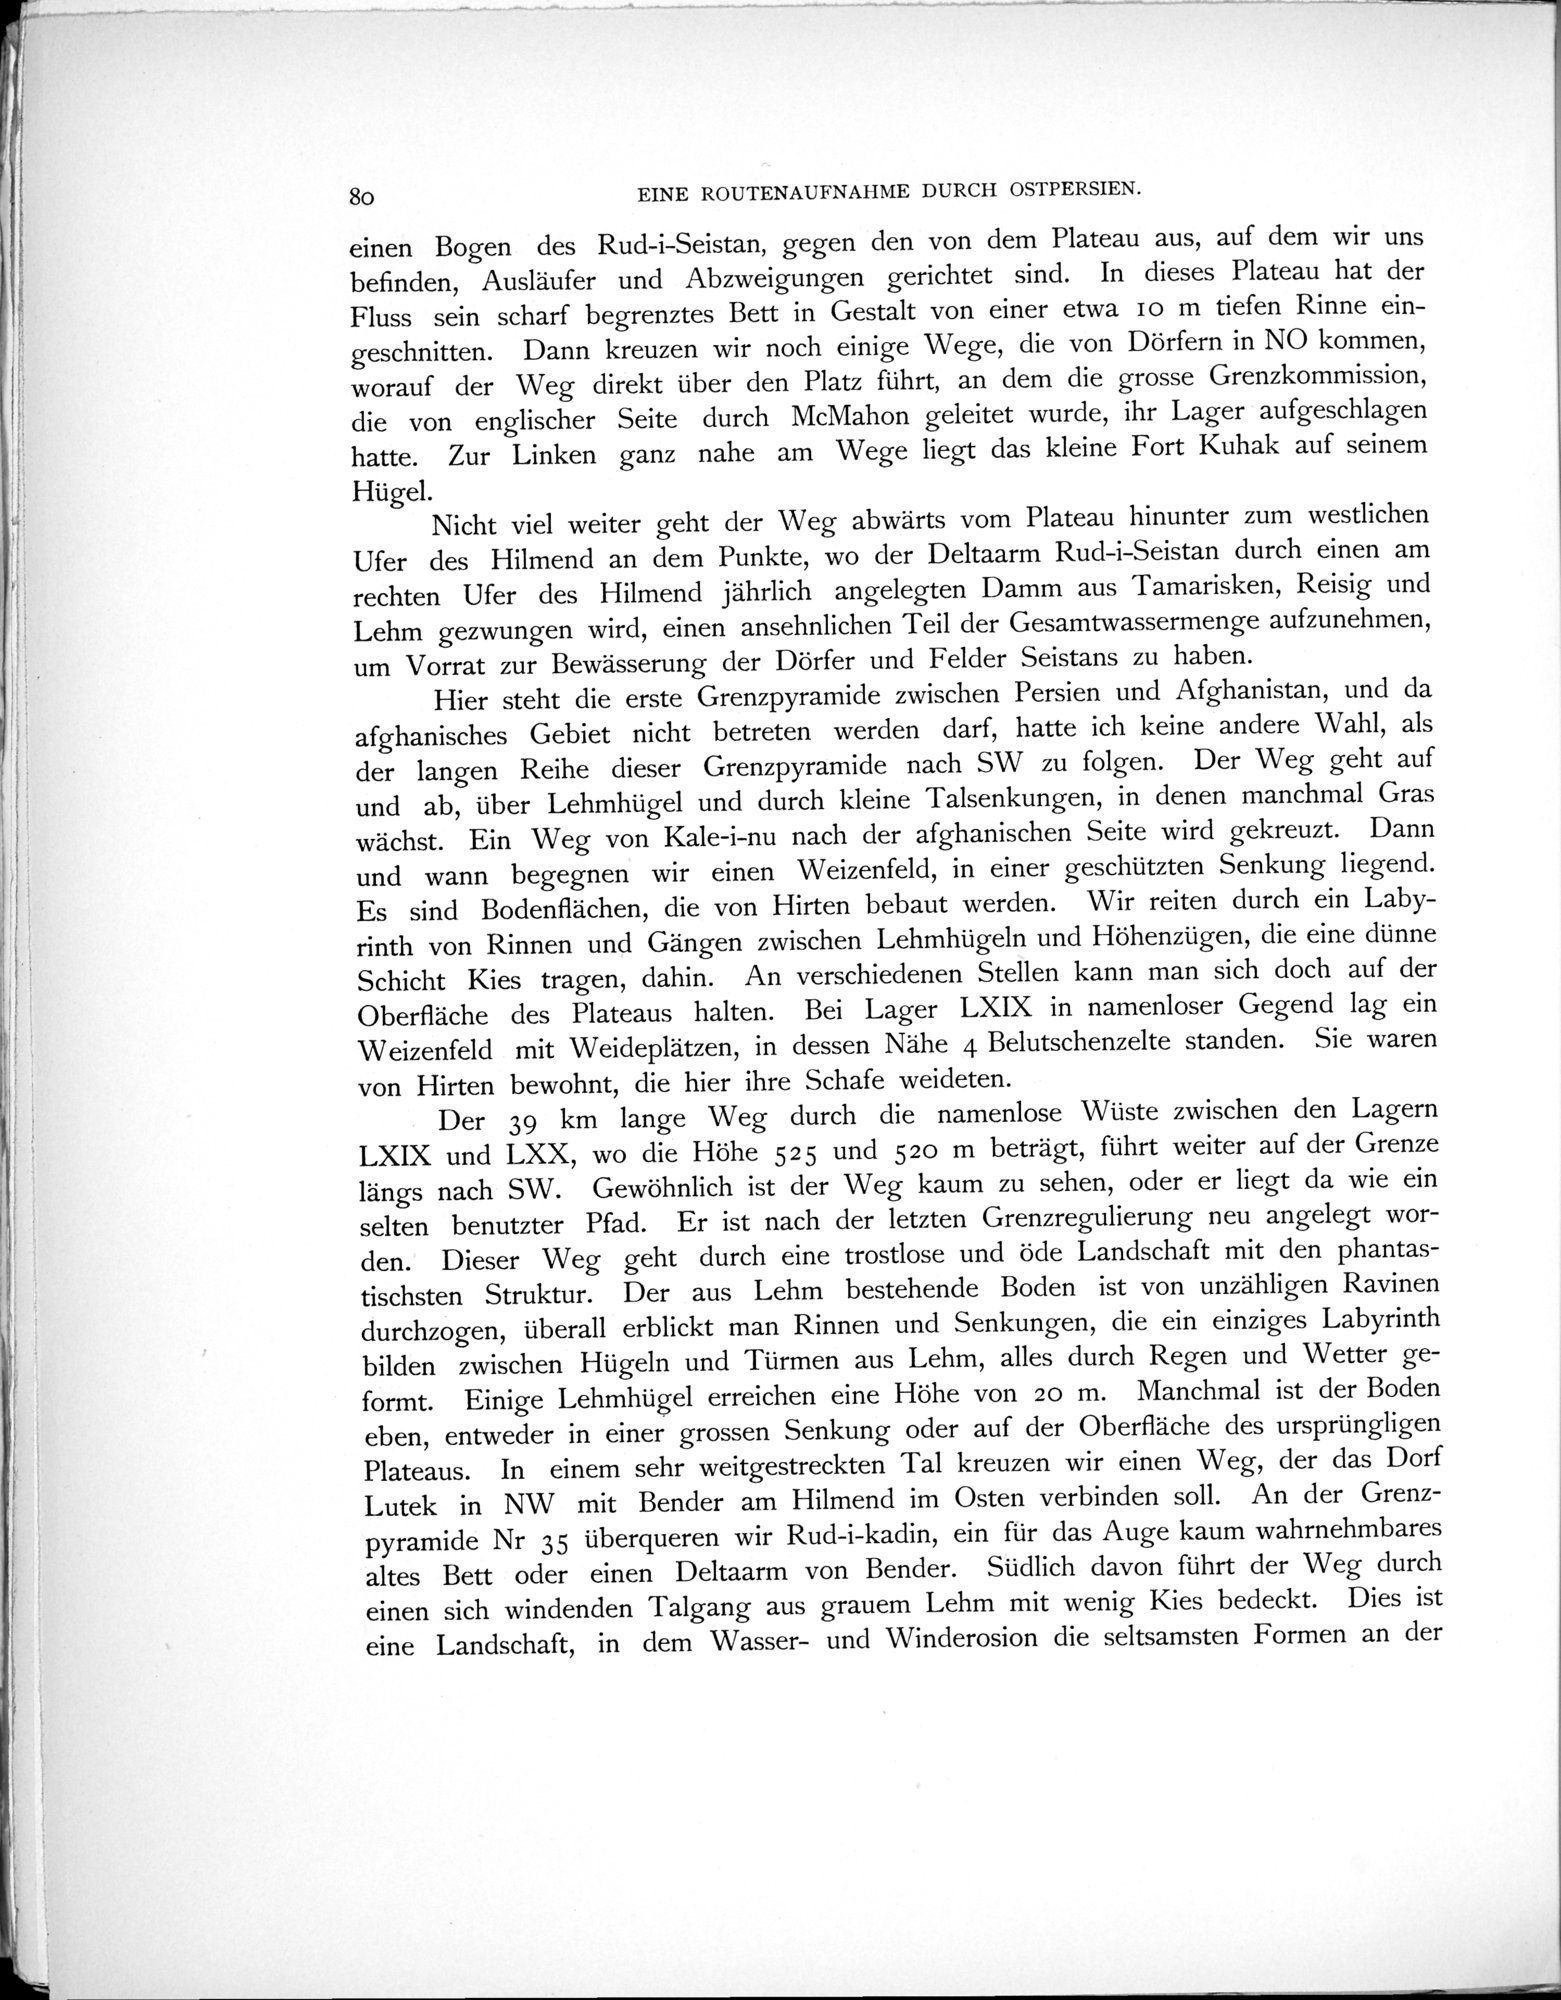 Eine Routenaufnahme durch Ostpersien : vol.1 / Page 260 (Grayscale High Resolution Image)